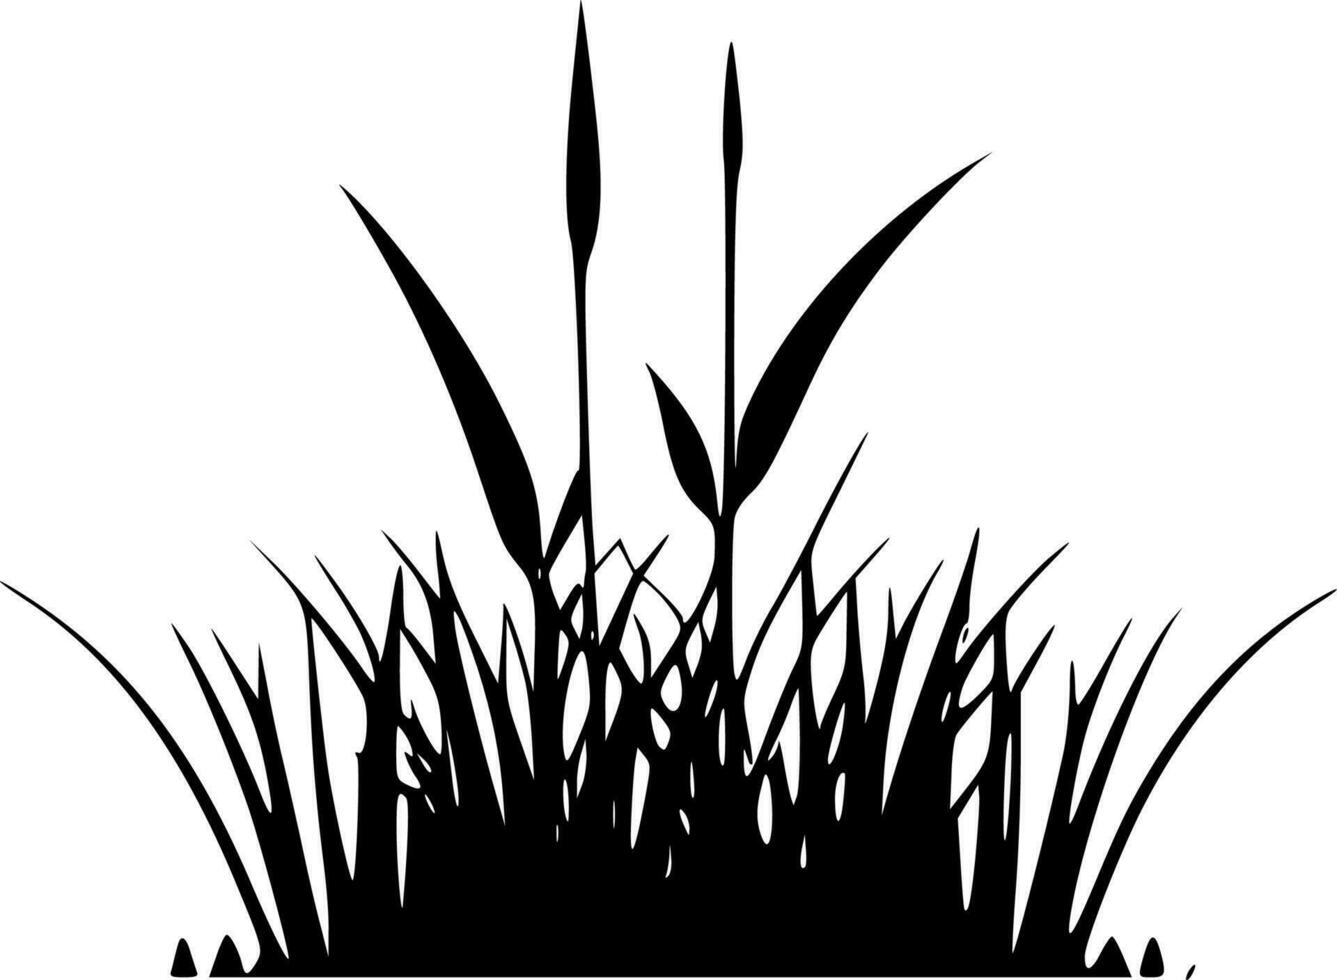 gräs, minimalistisk och enkel silhuett - vektor illustration